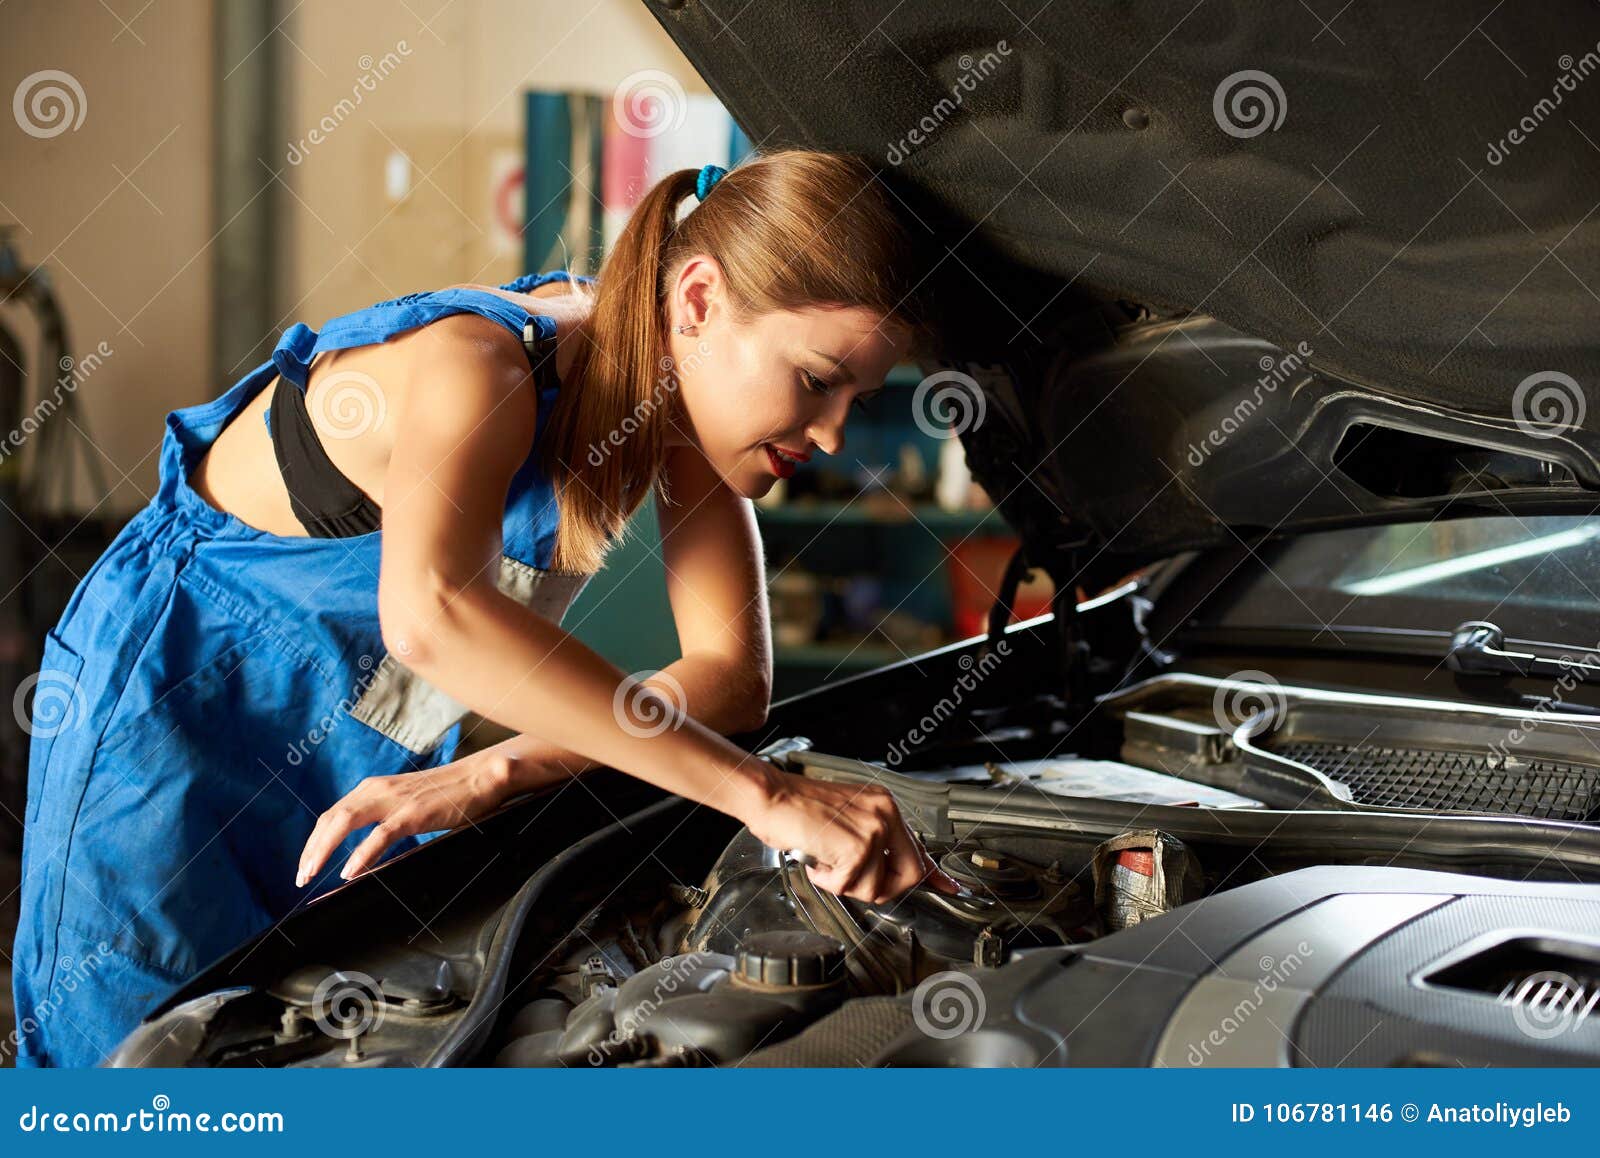 Свити фокс автомеханик чинит. Девушка чинит машину. Девушка ремонтирует машину. Женщина автомеханик. Девушка автослесарь.